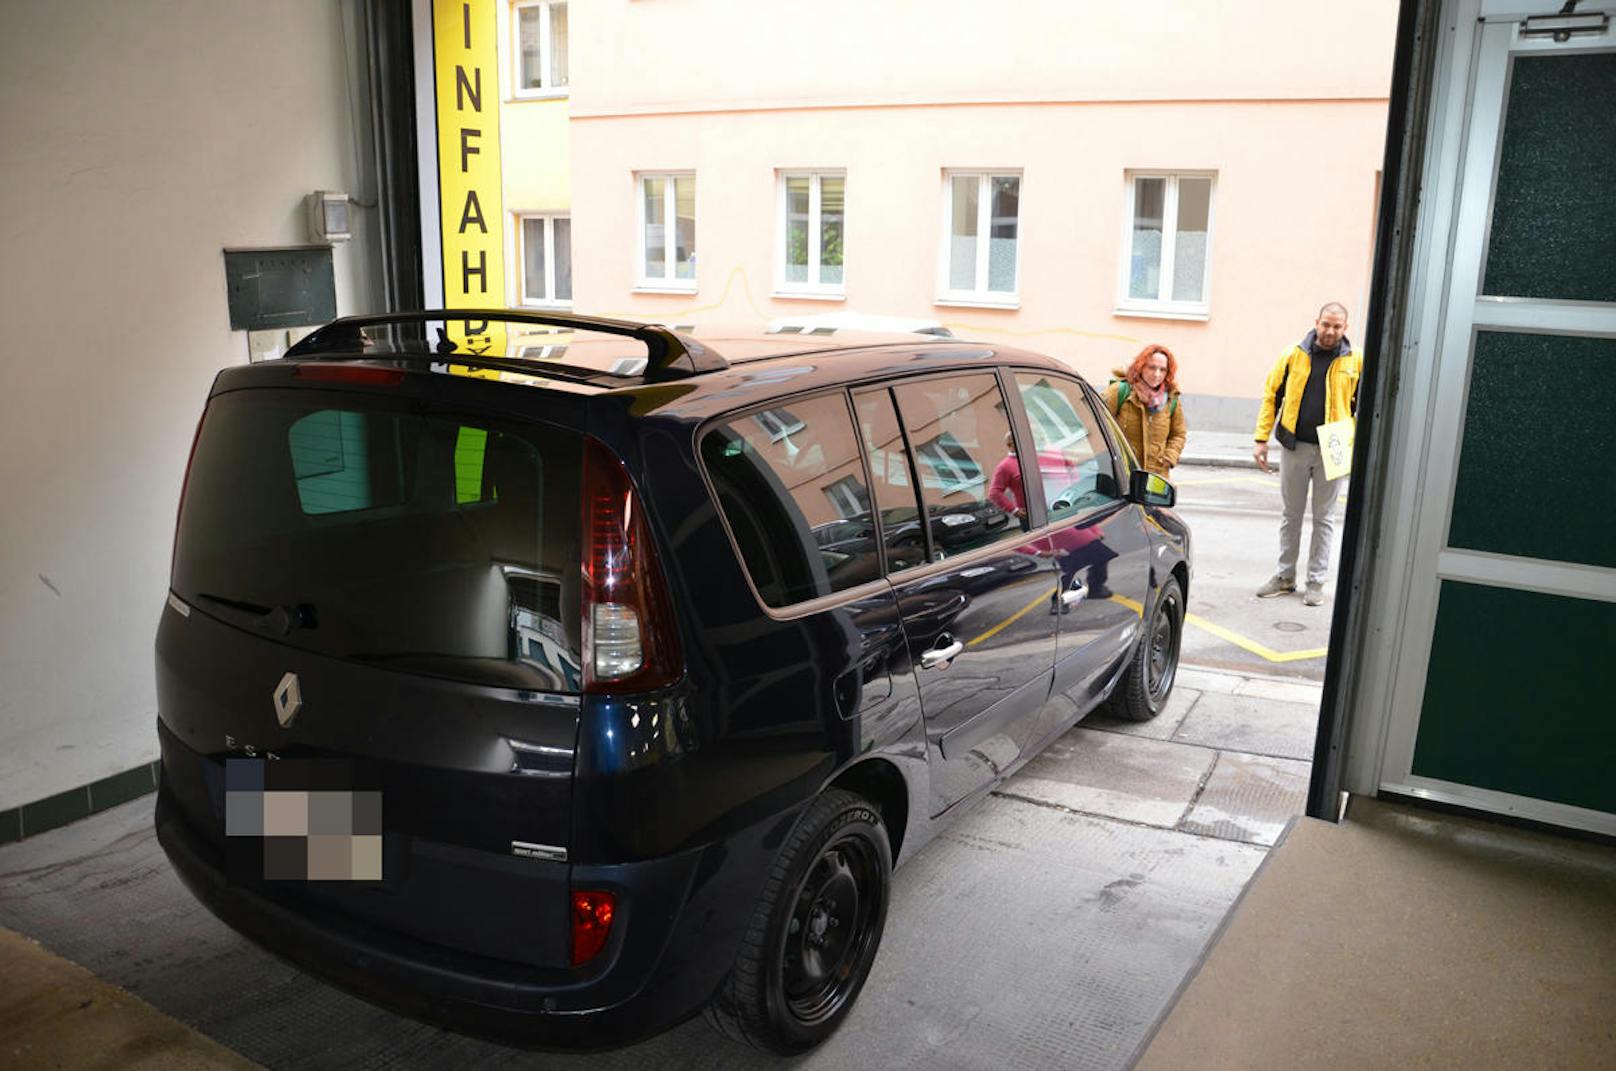 Renault Espace von Ulrike aus Wien nach der Reparatur durch Lucky Car.